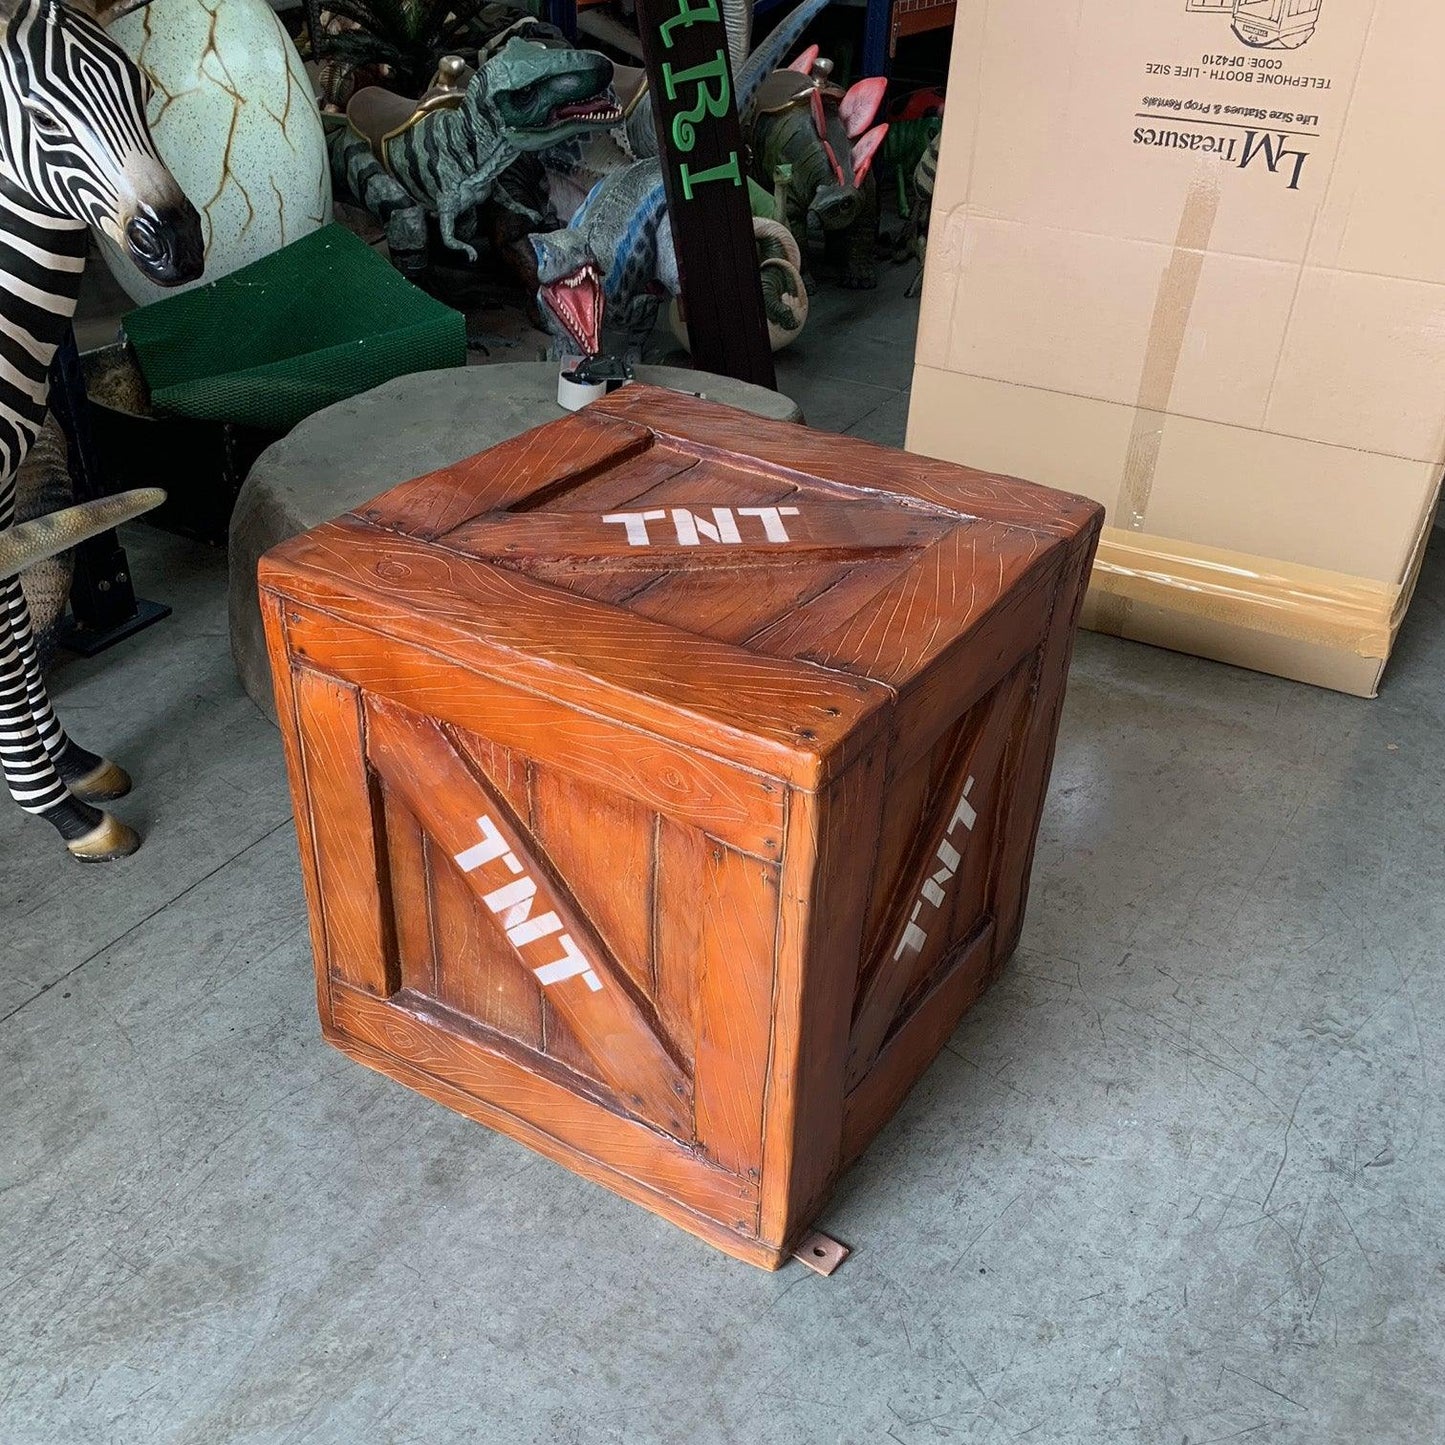 TNT Crate Statue - LM Treasures Prop Rentals 